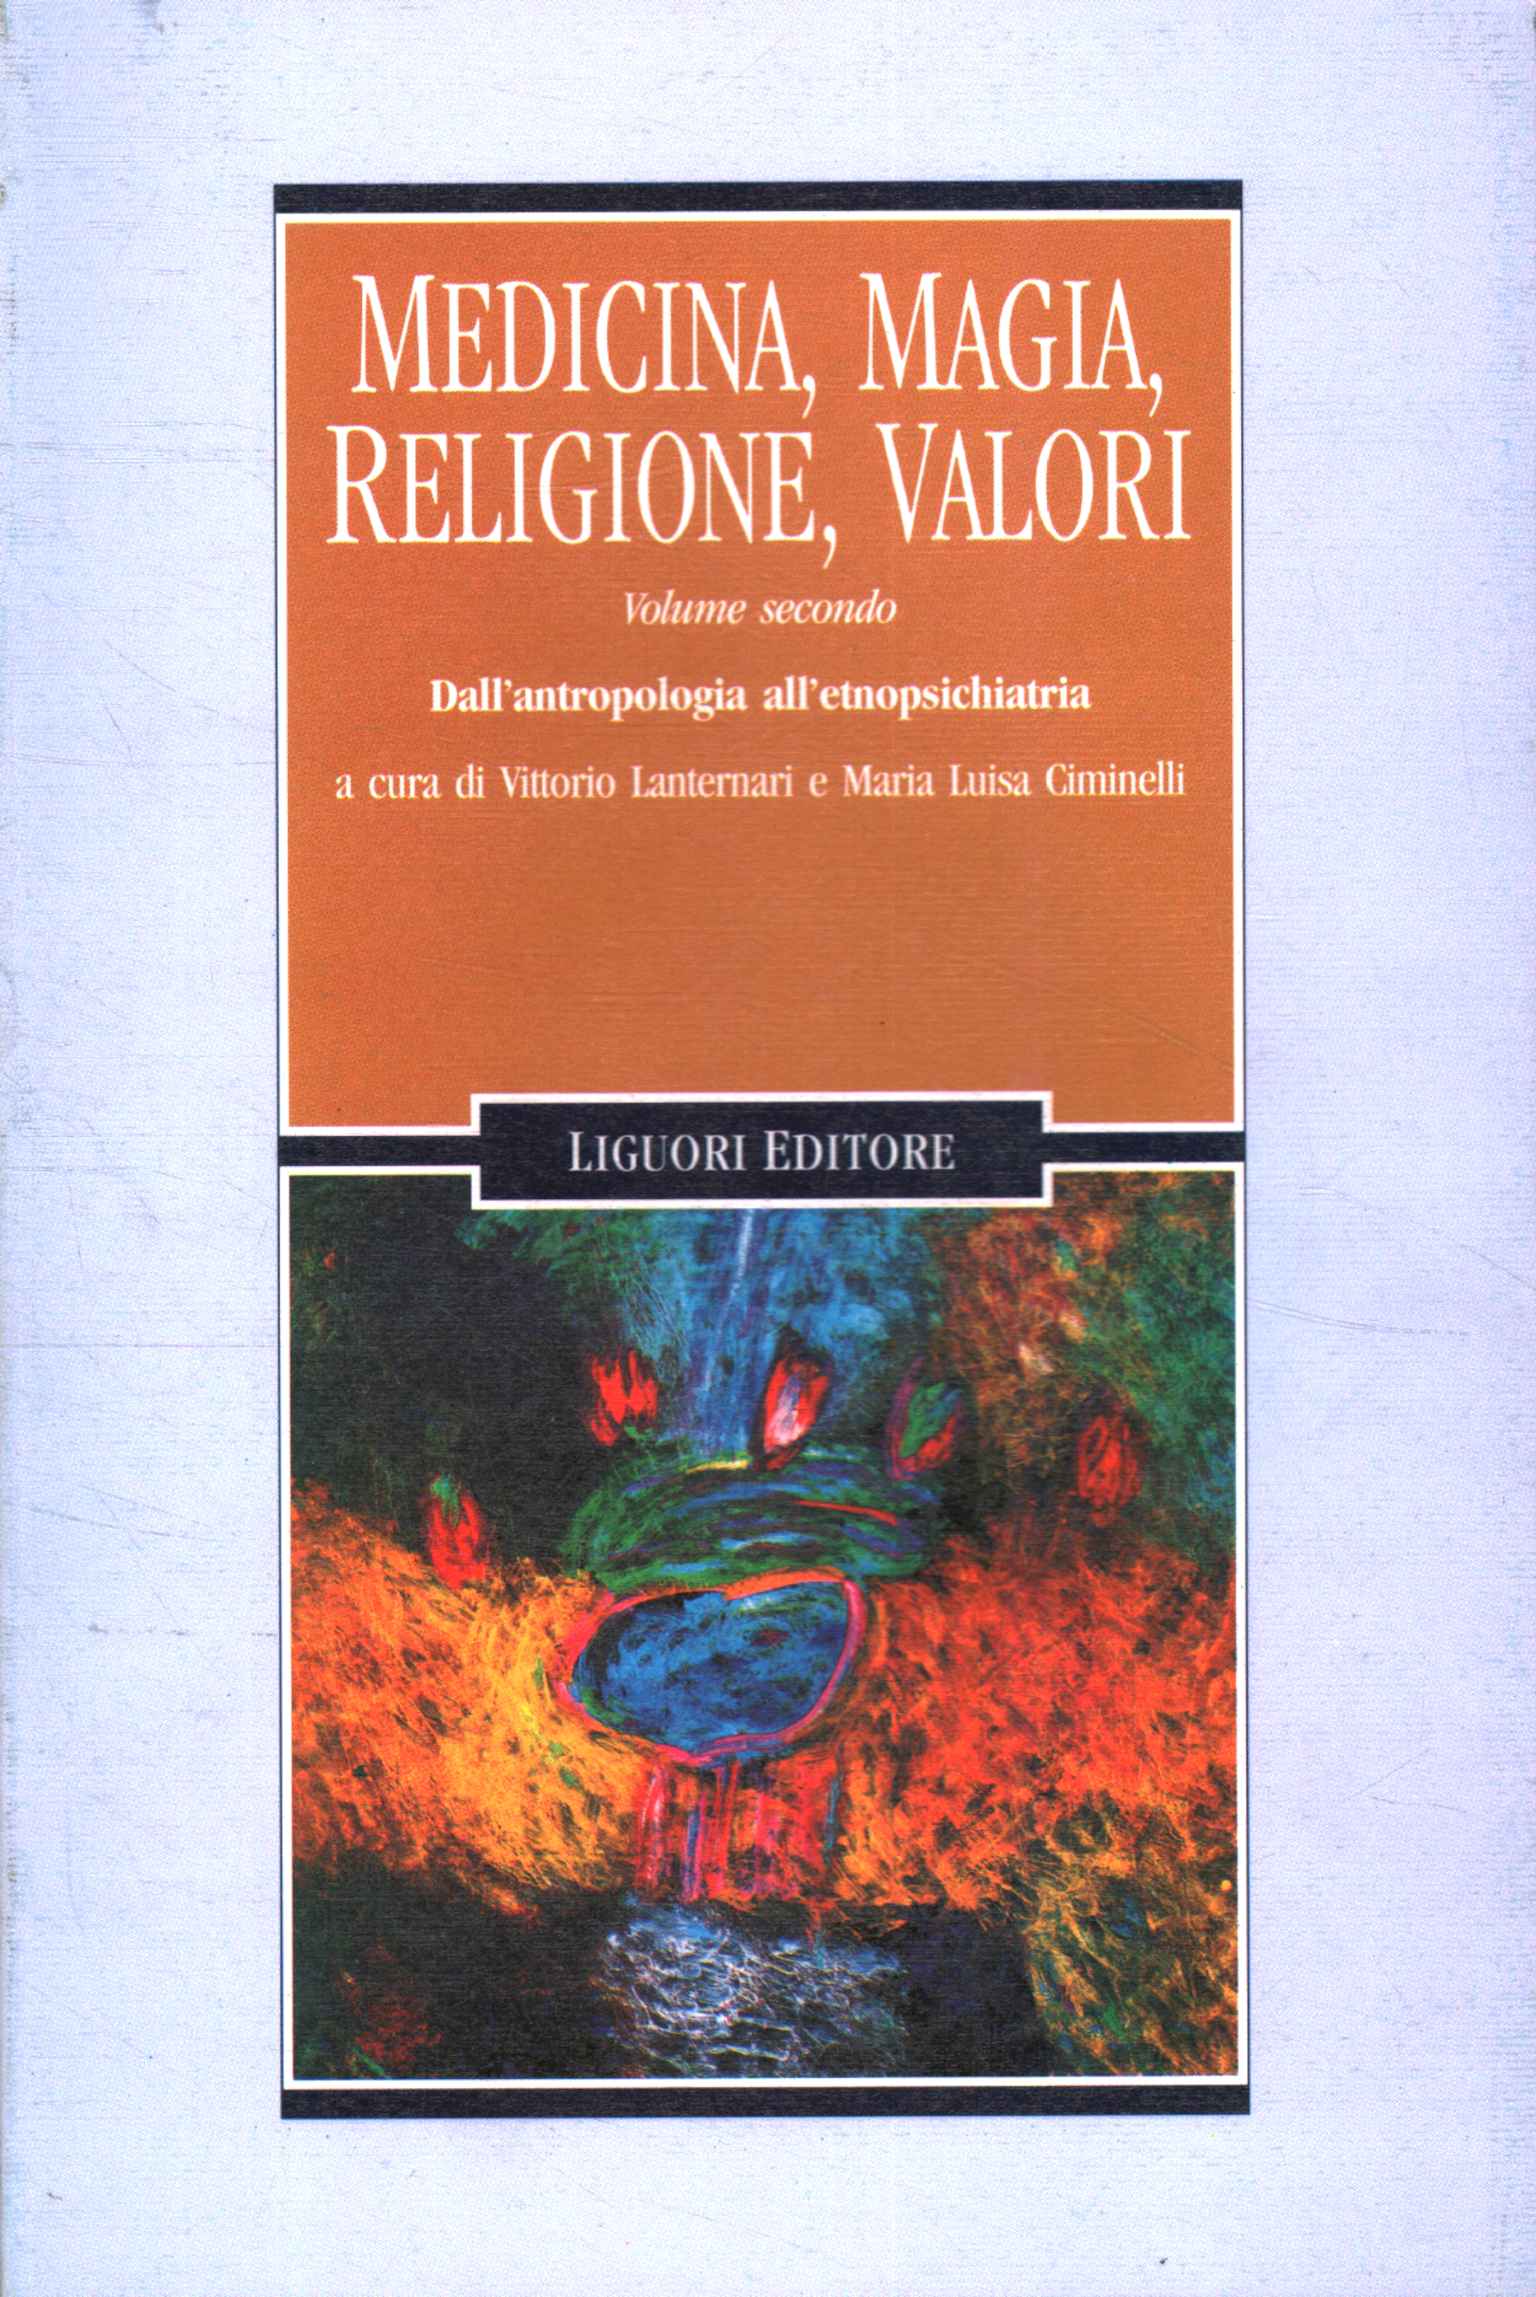 Medicina magia, religione, valori (Volume